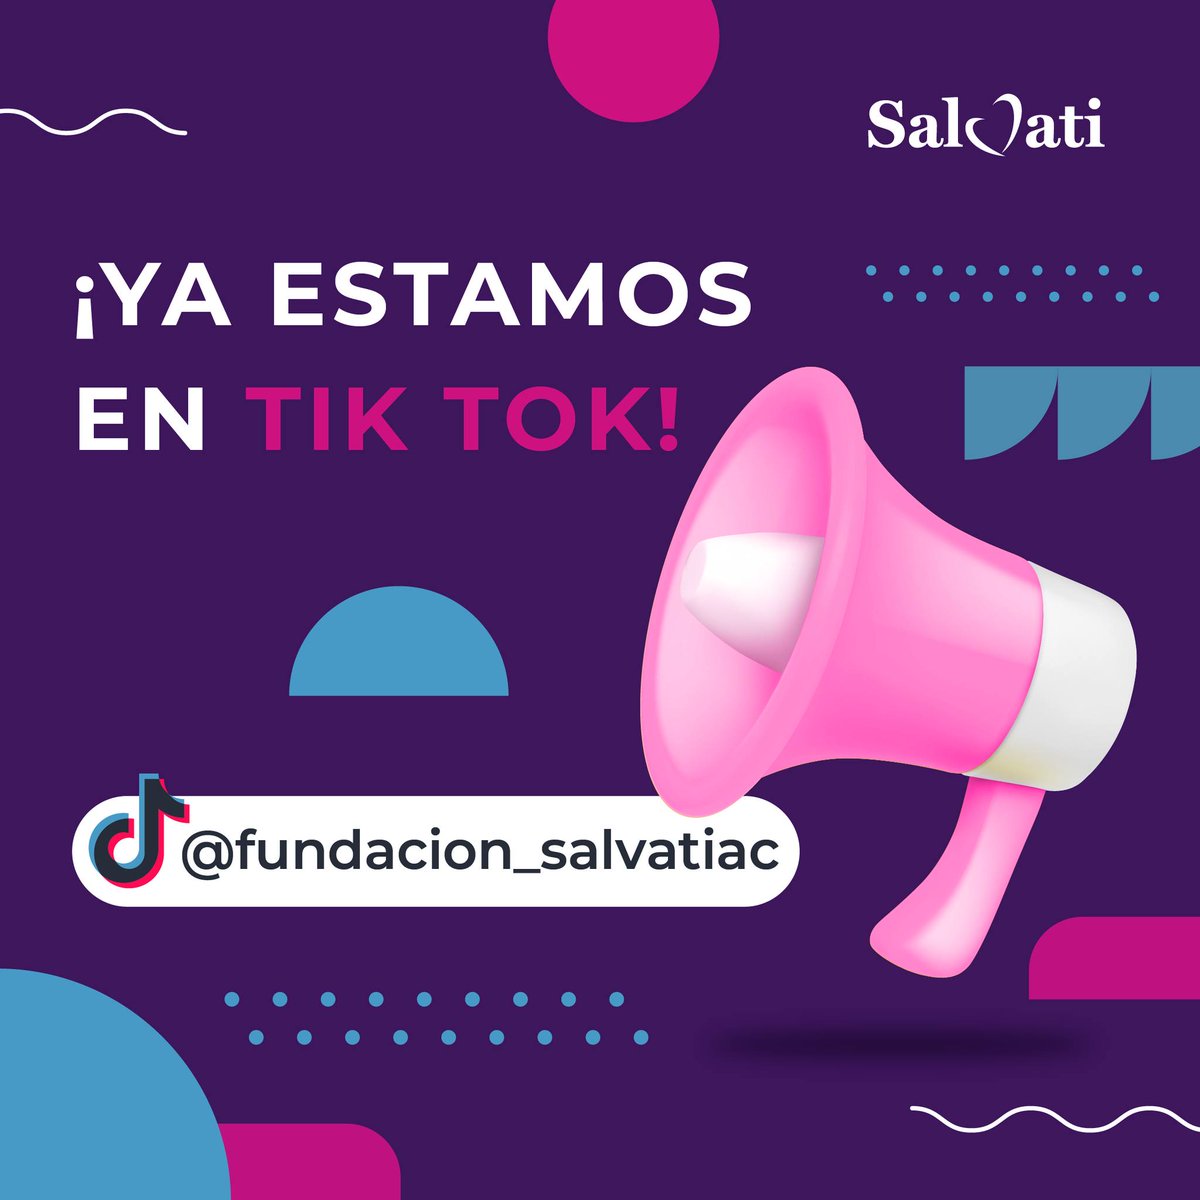 ¡¡Ya estamos en Tik Tok!! 💃 Encuéntranos como @fundacion_salvatiac o en el siguiente enlace: tiktok.com/@fundacion_sal…... Siempre, #SalvatiContigo 💜